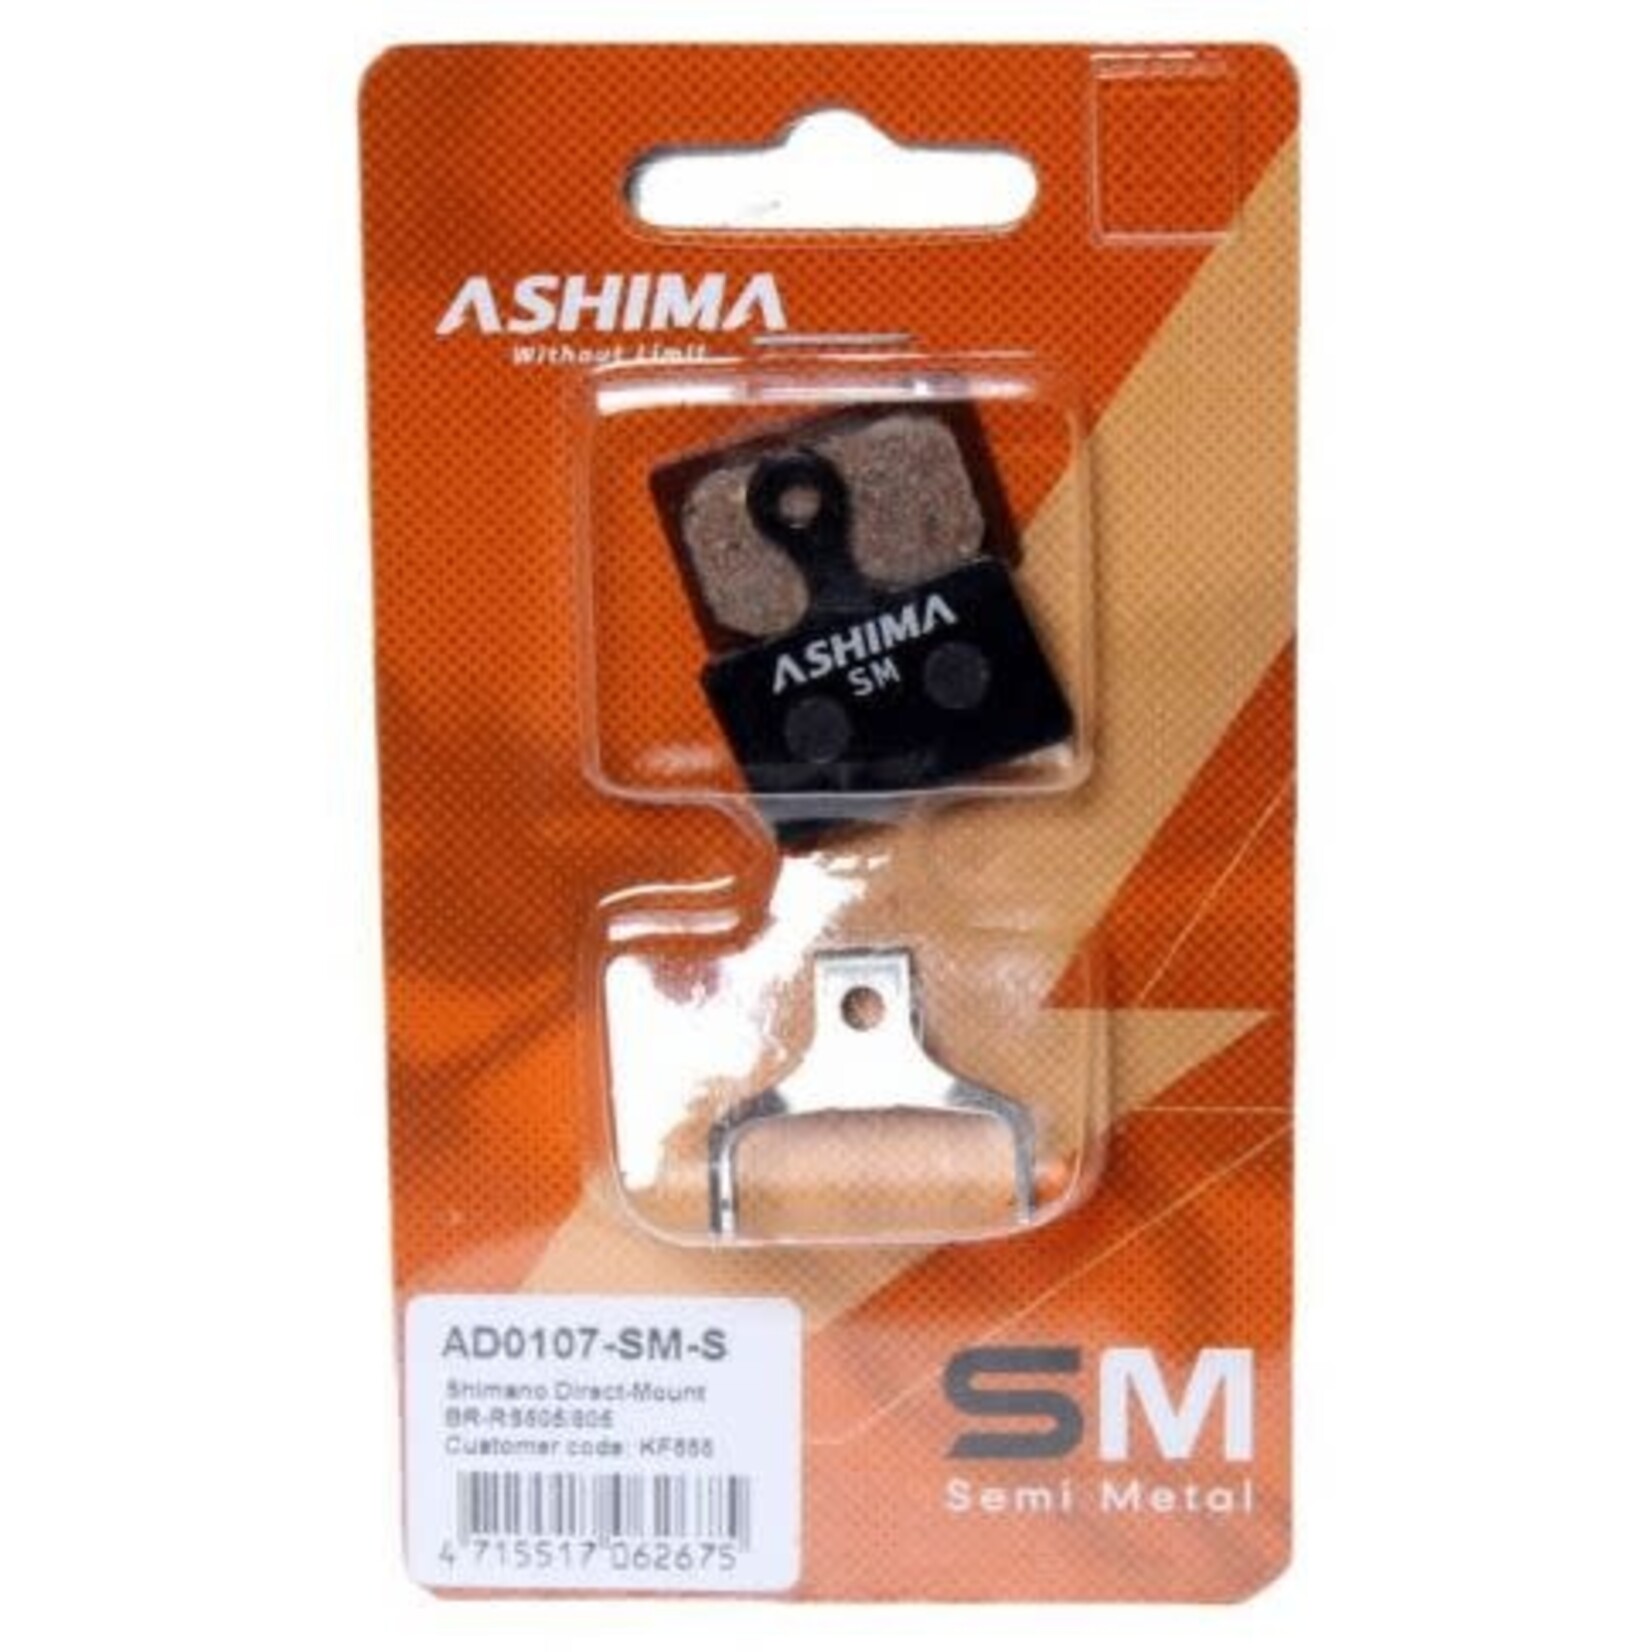 Ashima - disc brake pads - semi metallic - shimano disc brake pads xtr br-m9100